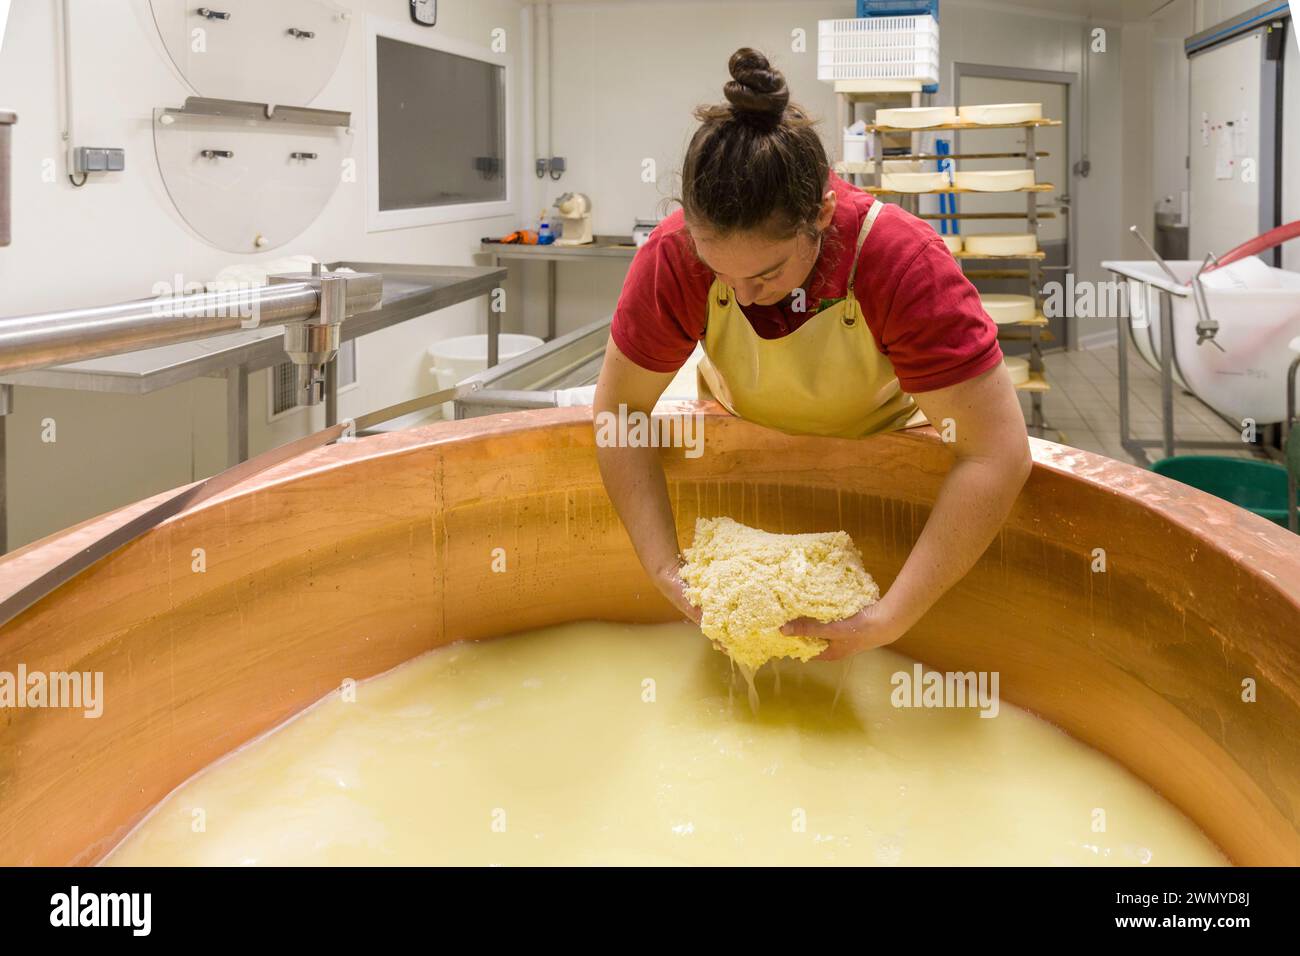 France, Indre et Loire, les-Hermites, fromagerie de Lucie, dans le laboratoire de fromagerie les caillés sont collectés au fond de la cuve de cuivre Banque D'Images